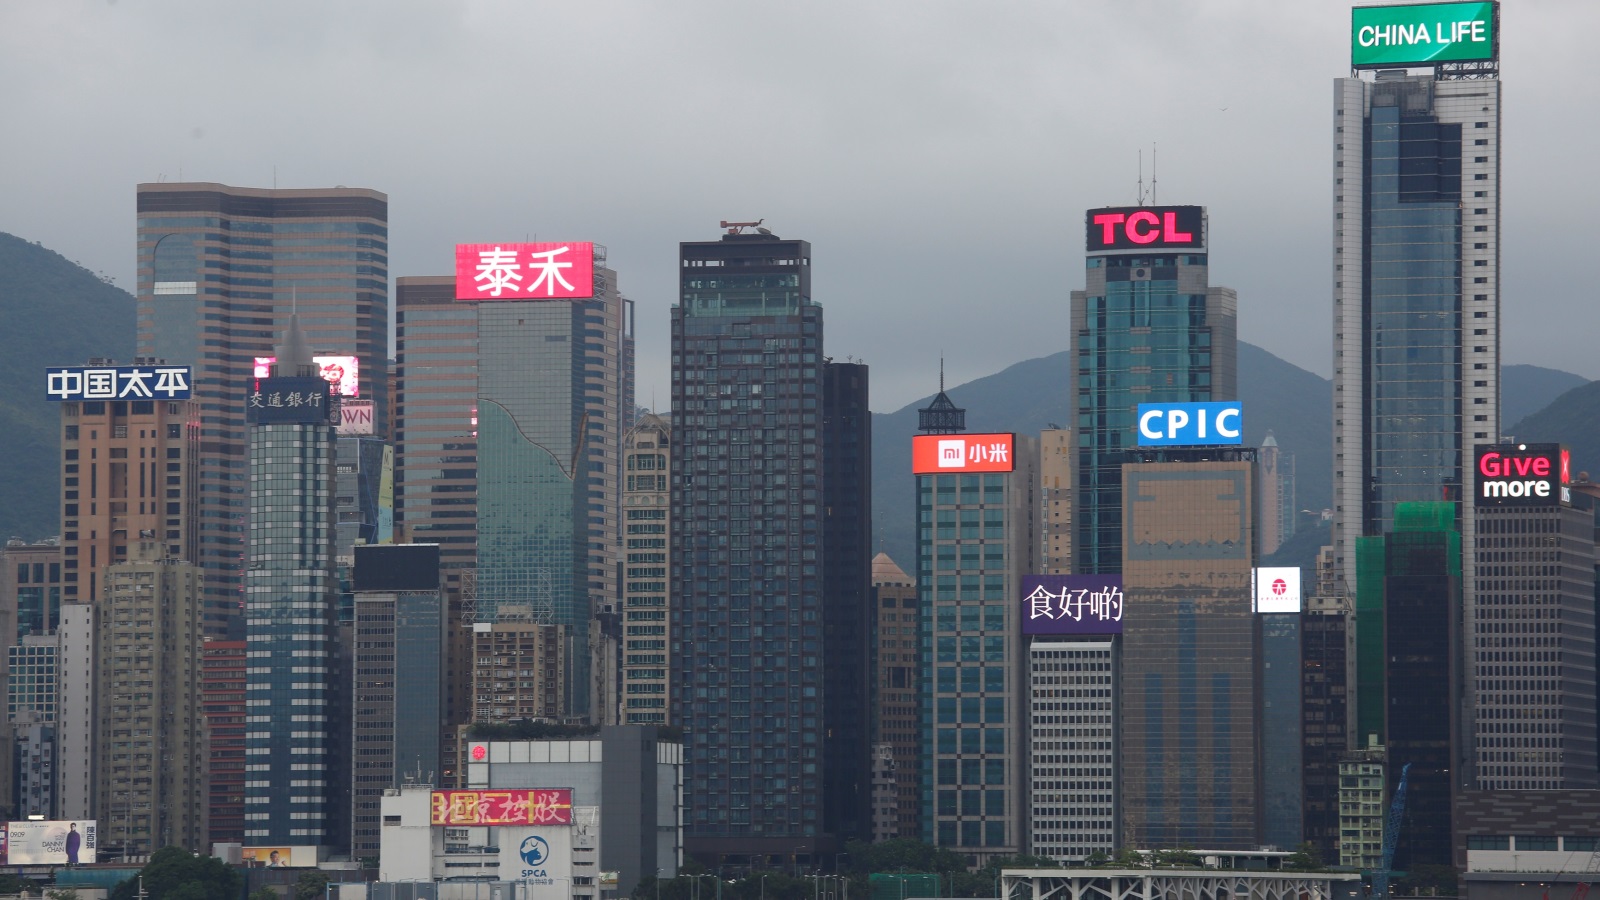 تمتّعت هونغ كونغ تاريخيا ببيئة استثمار مستقرة تحميها قوانين شفافة ومحاكم عادلة ما جعلها دوما أكثر جاذبية للمستثمرين من بر الصين الرئيس